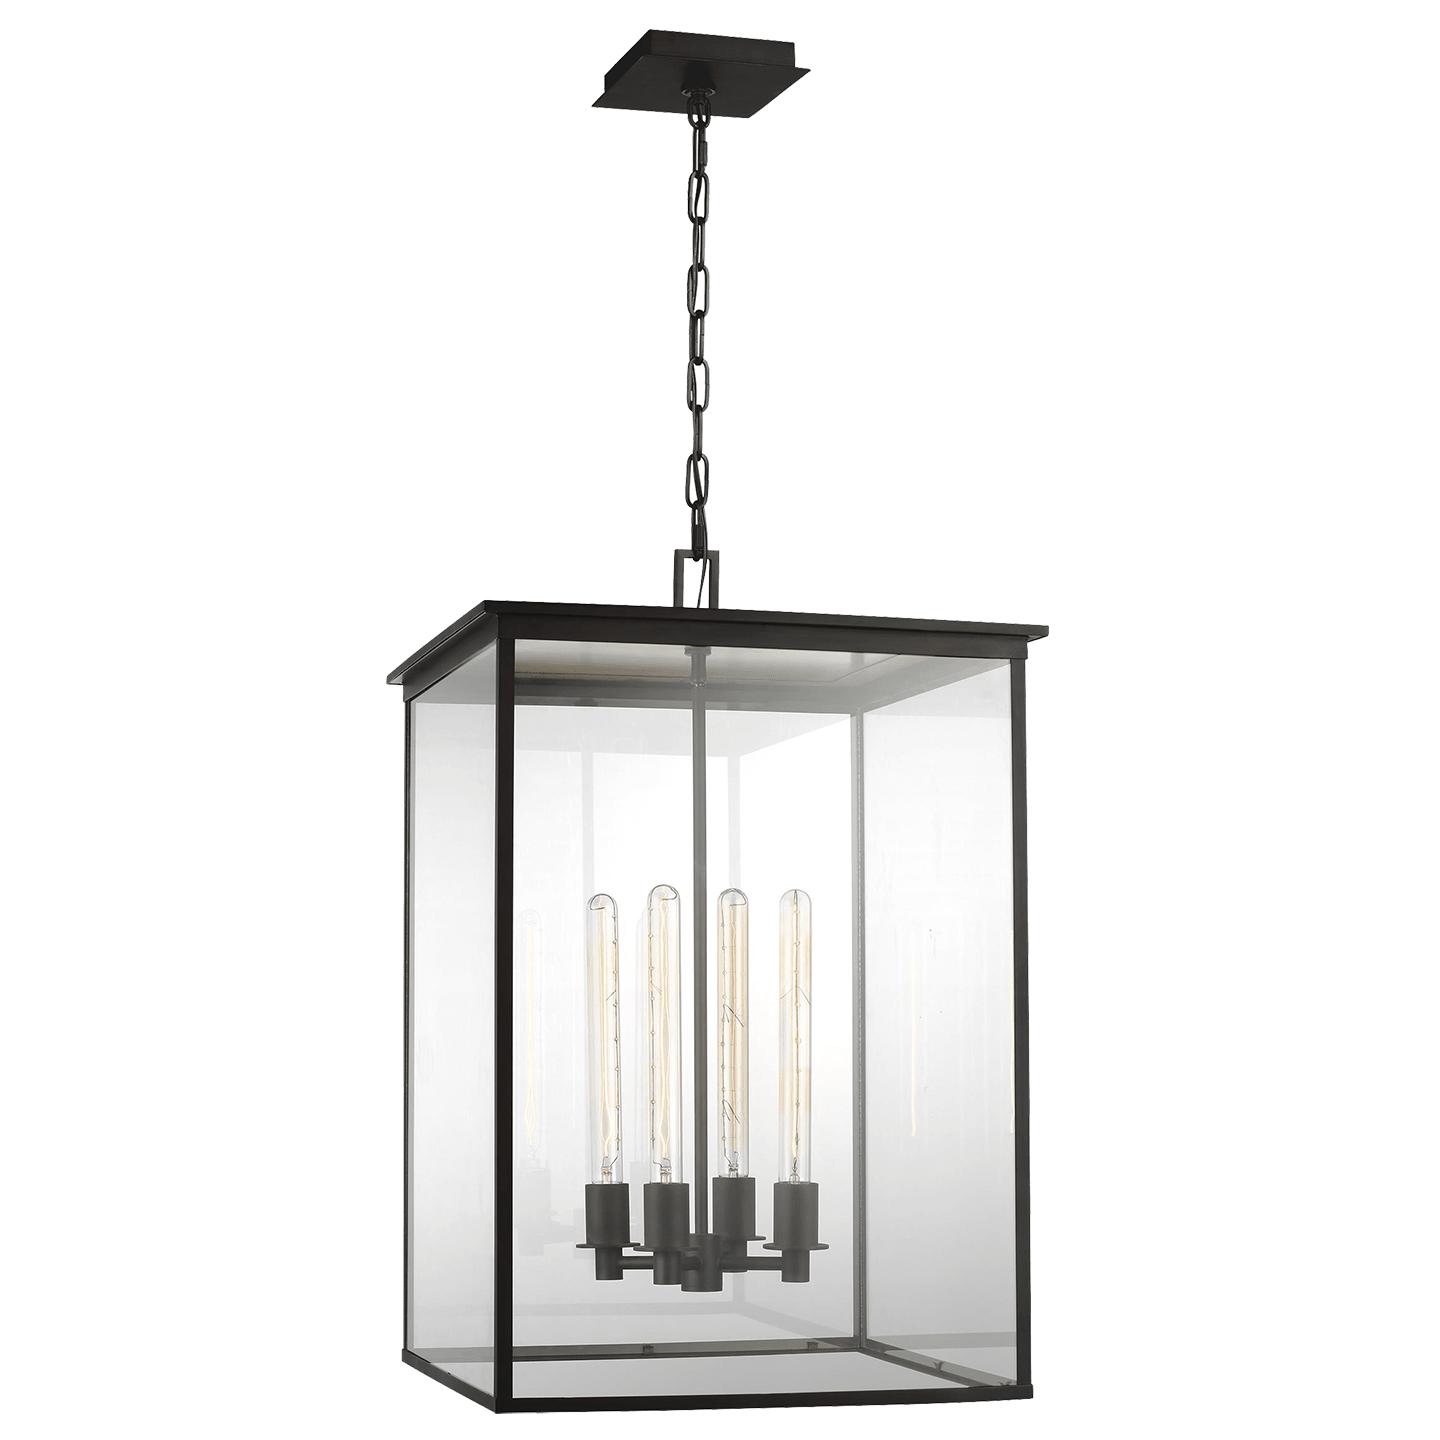 Купить Подвесной светильник Freeport Large Outdoor Hanging Lantern в интернет-магазине roooms.ru